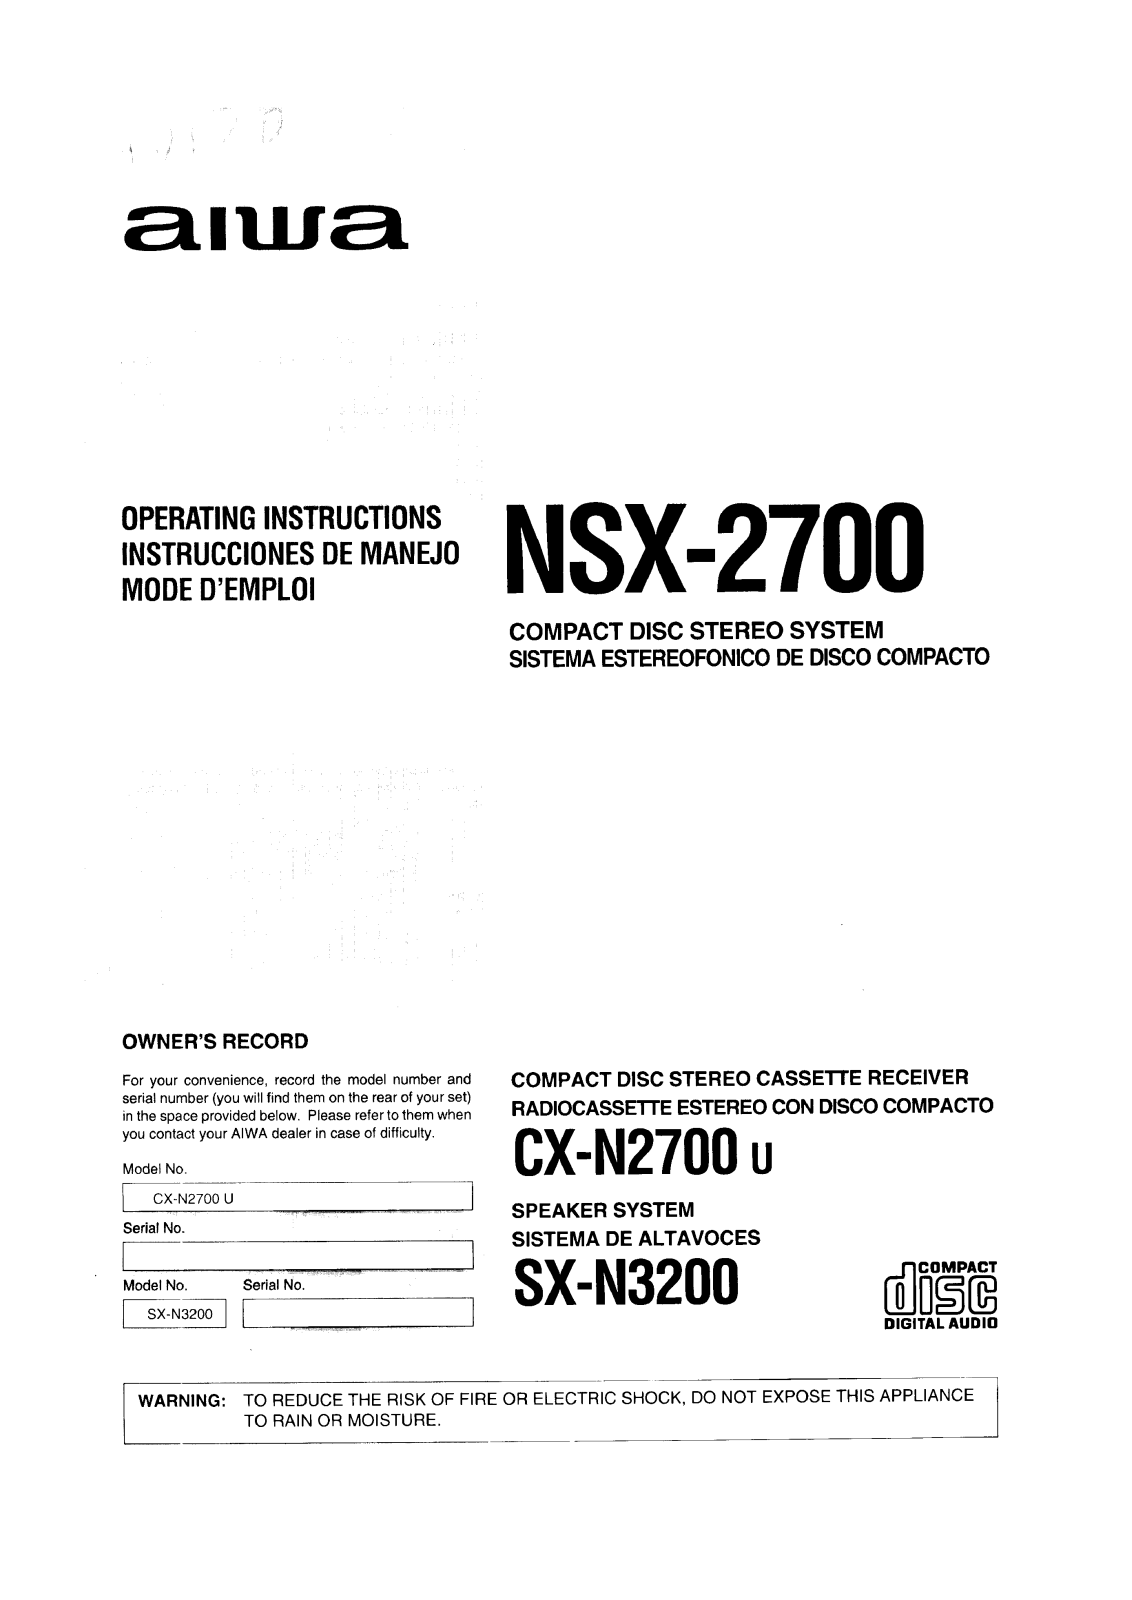 Aiwa NS-X2700 Owners Manual